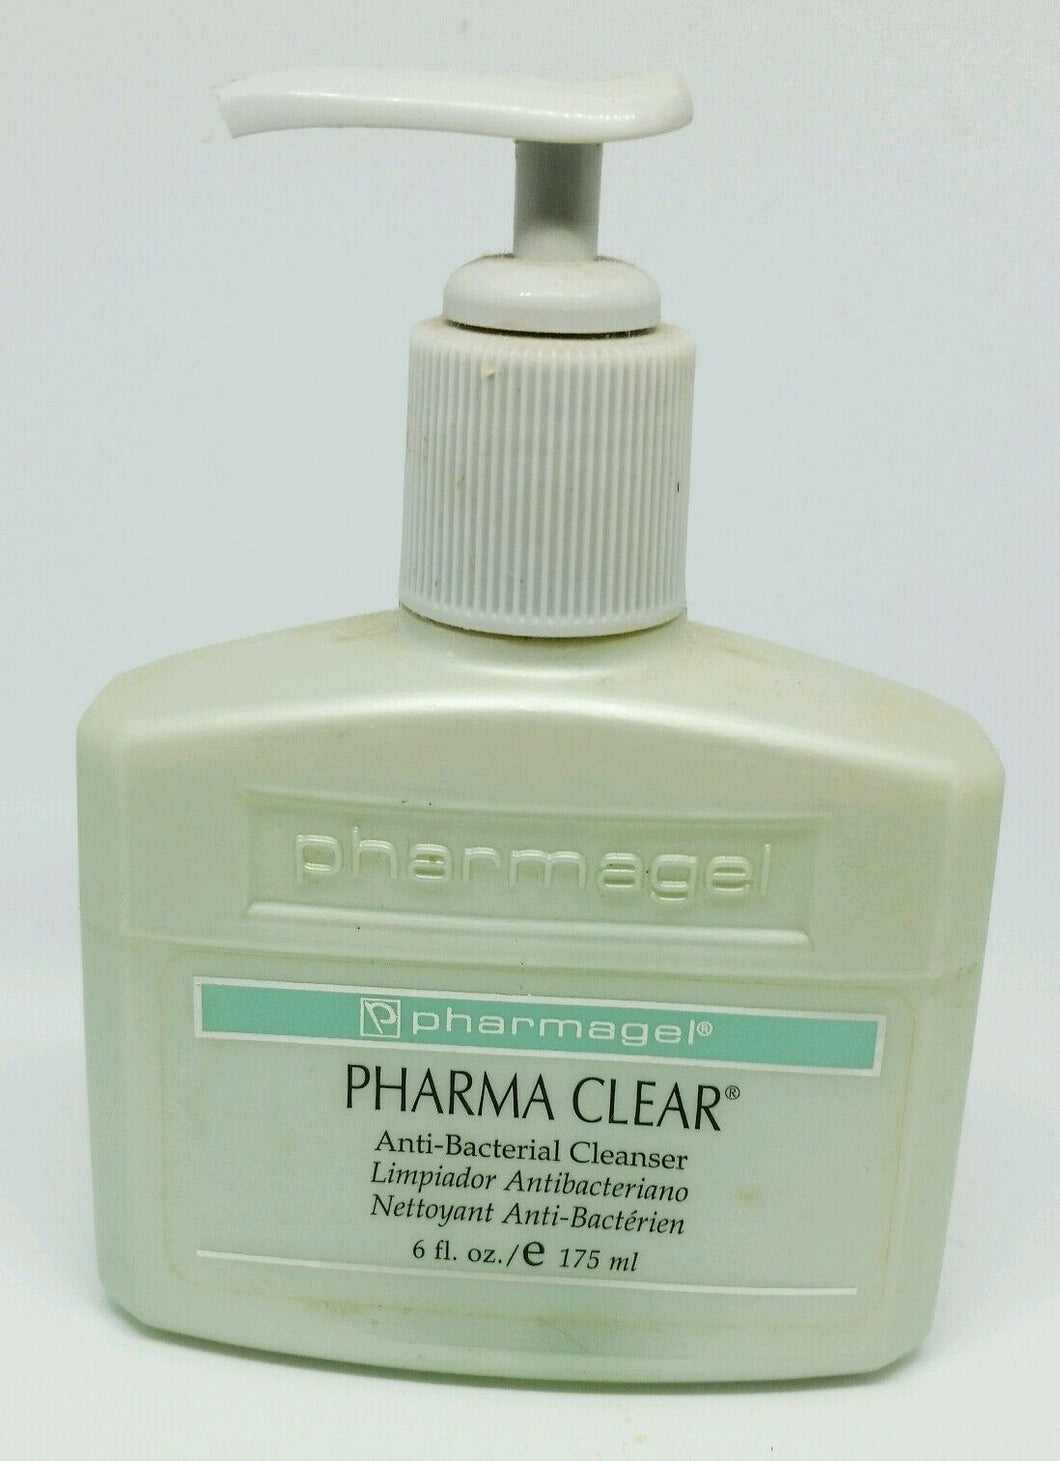 Pharmagel Pharma Clear Anti-Bacterial Cleanser